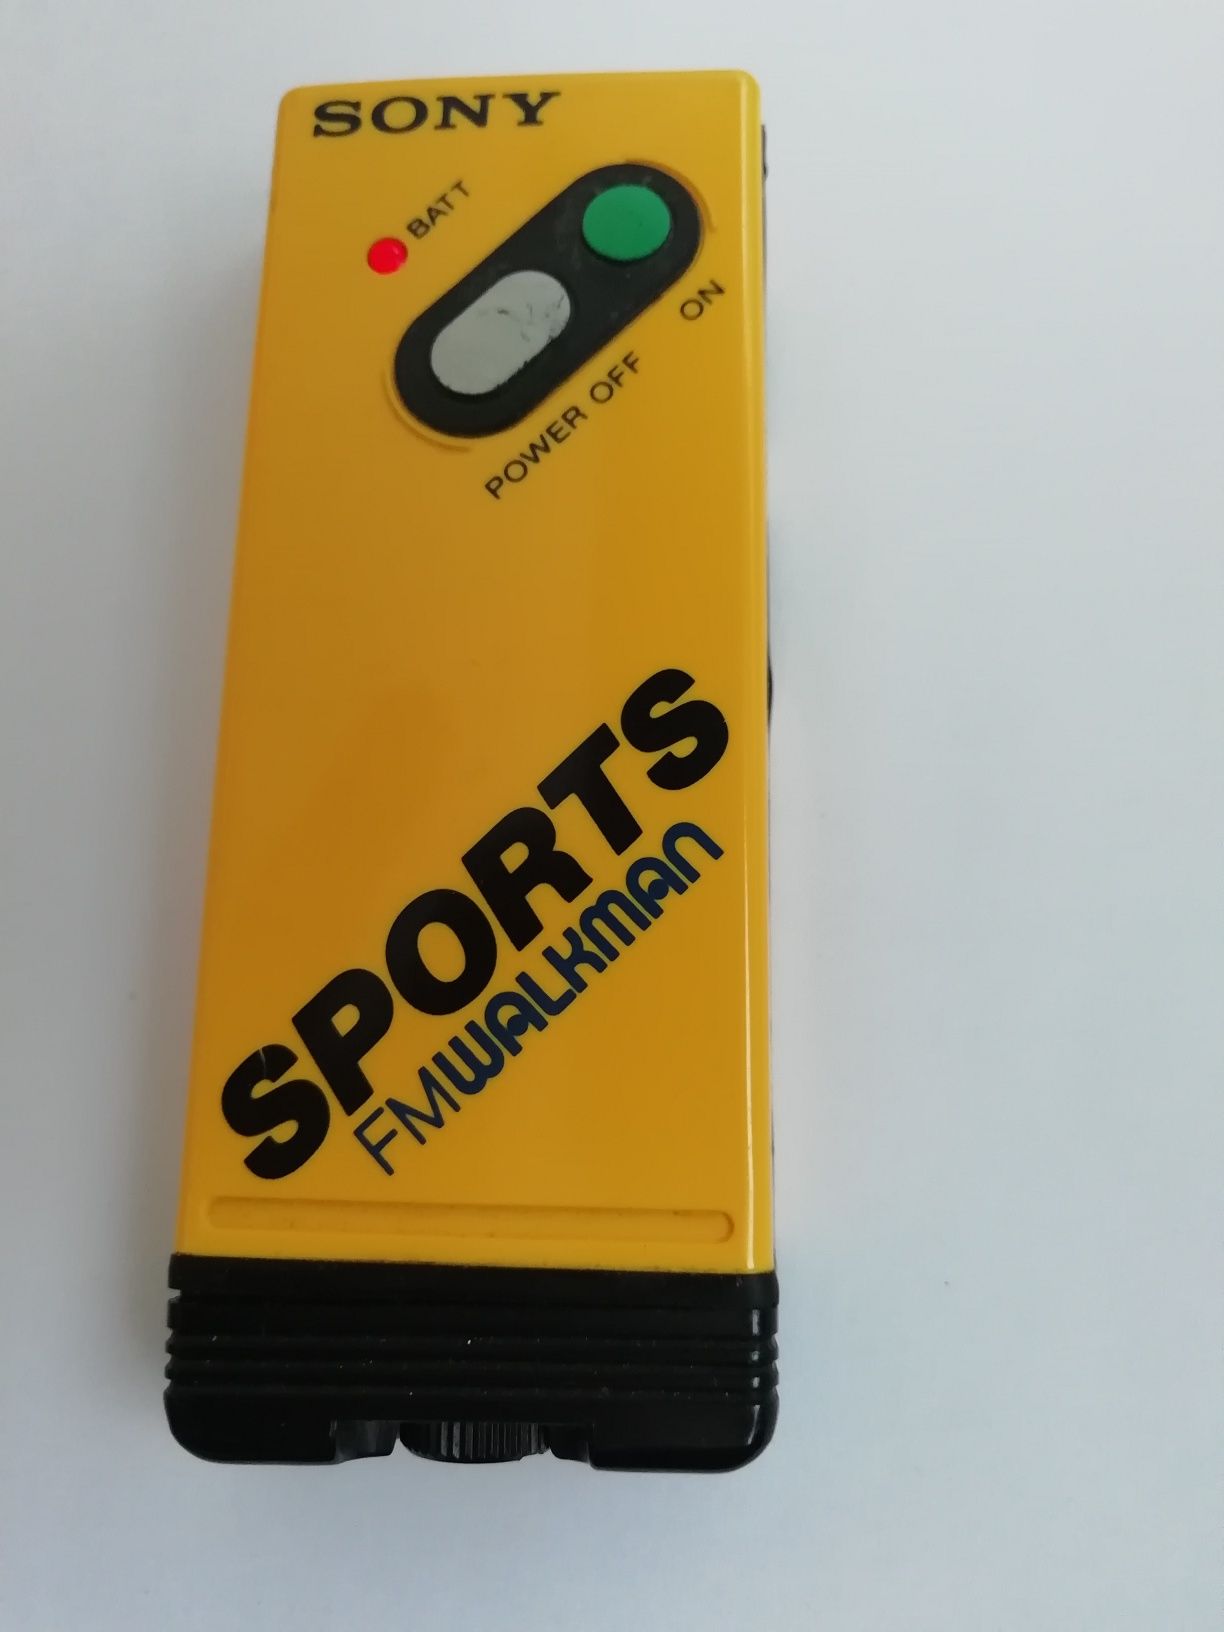 Sony Sports FM Walkman SFR-5  Radio Walkman Vintage